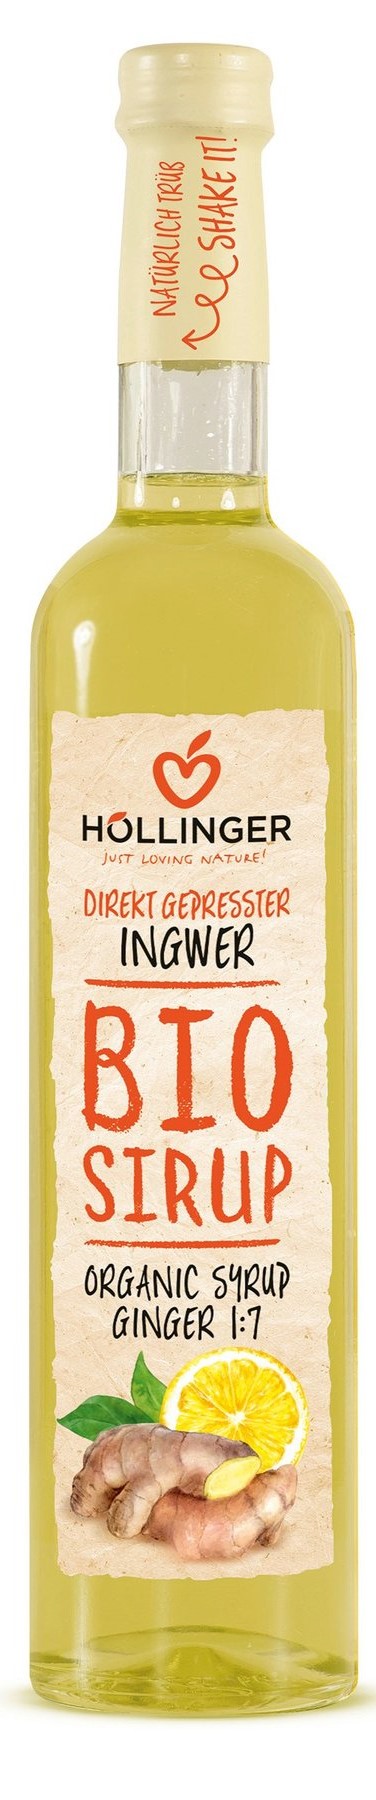 Hollinger Имбирно-лимонный сироп БИО